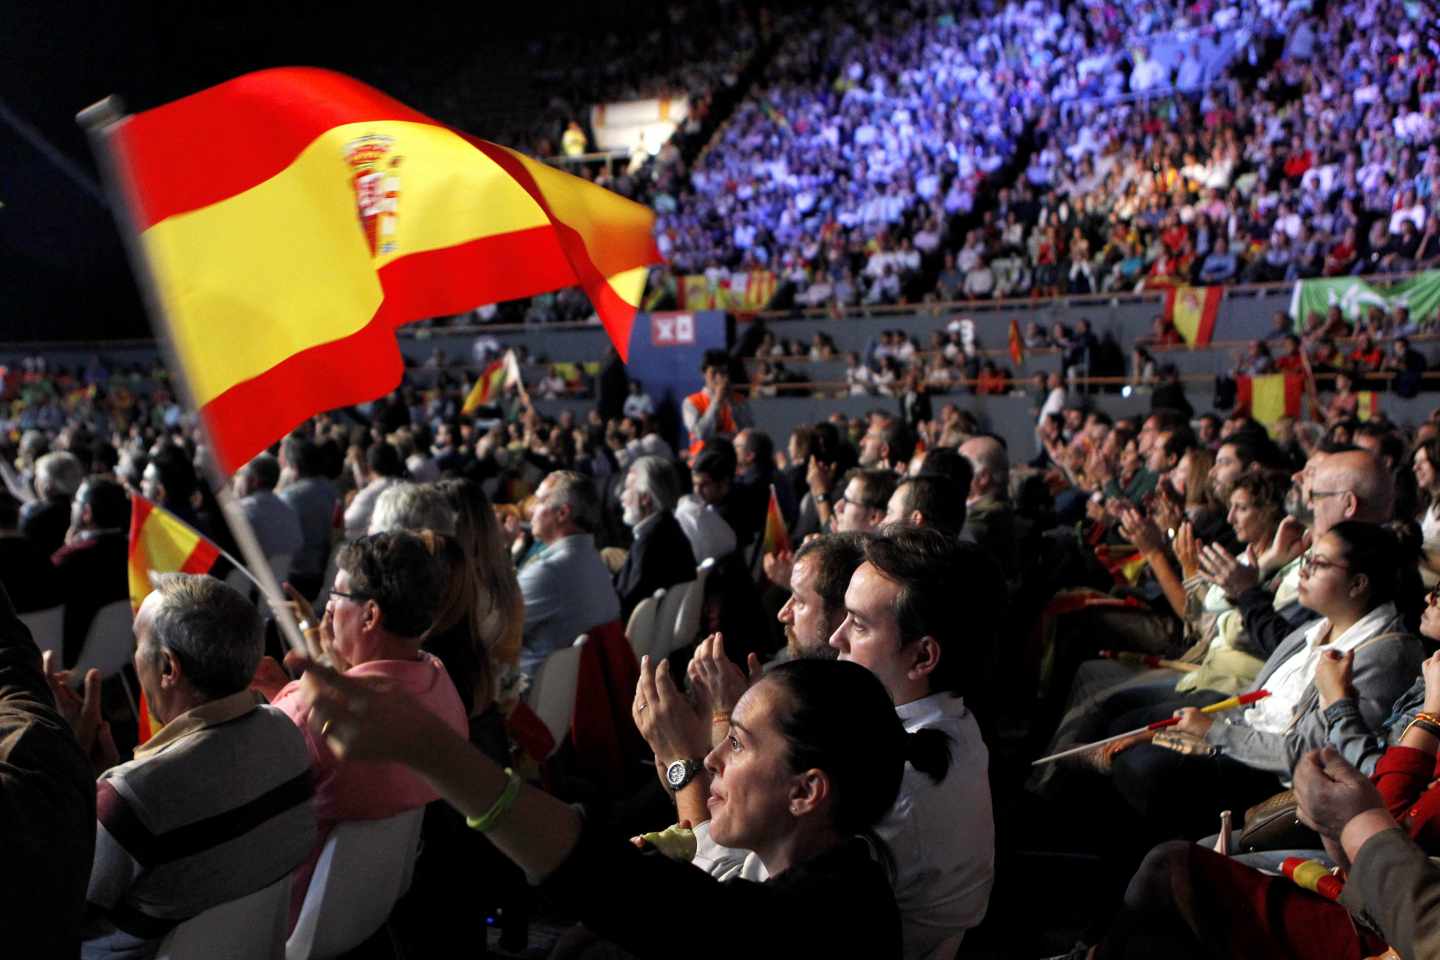 Acto convocado por Vox hoy en el Palacio de Vistalegre de Madrid, con el objetivo de llenar el recinto de banderas de España y exigir la convocatoria de elecciones anticipadas.